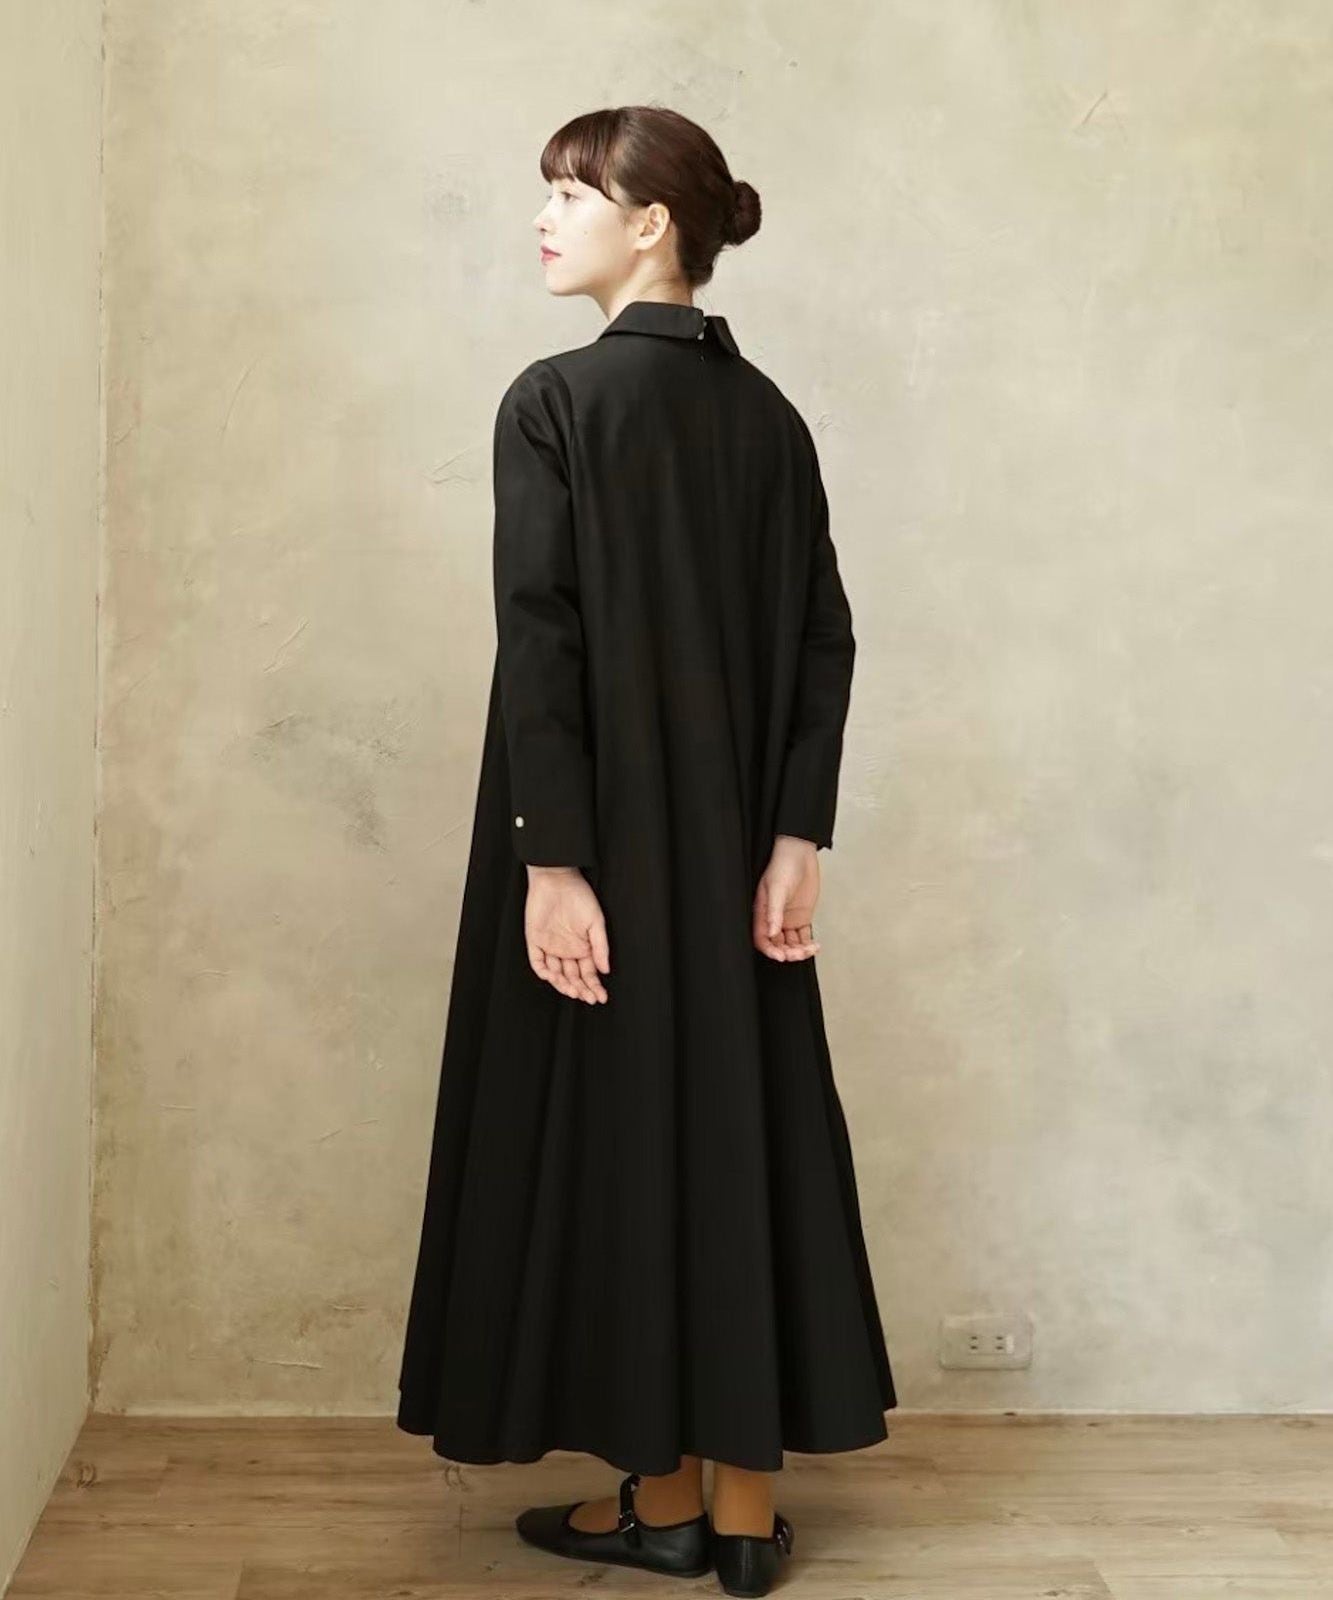 ≪在庫販売≫【THE DRESS #34】round collar flare dress（ラウンド